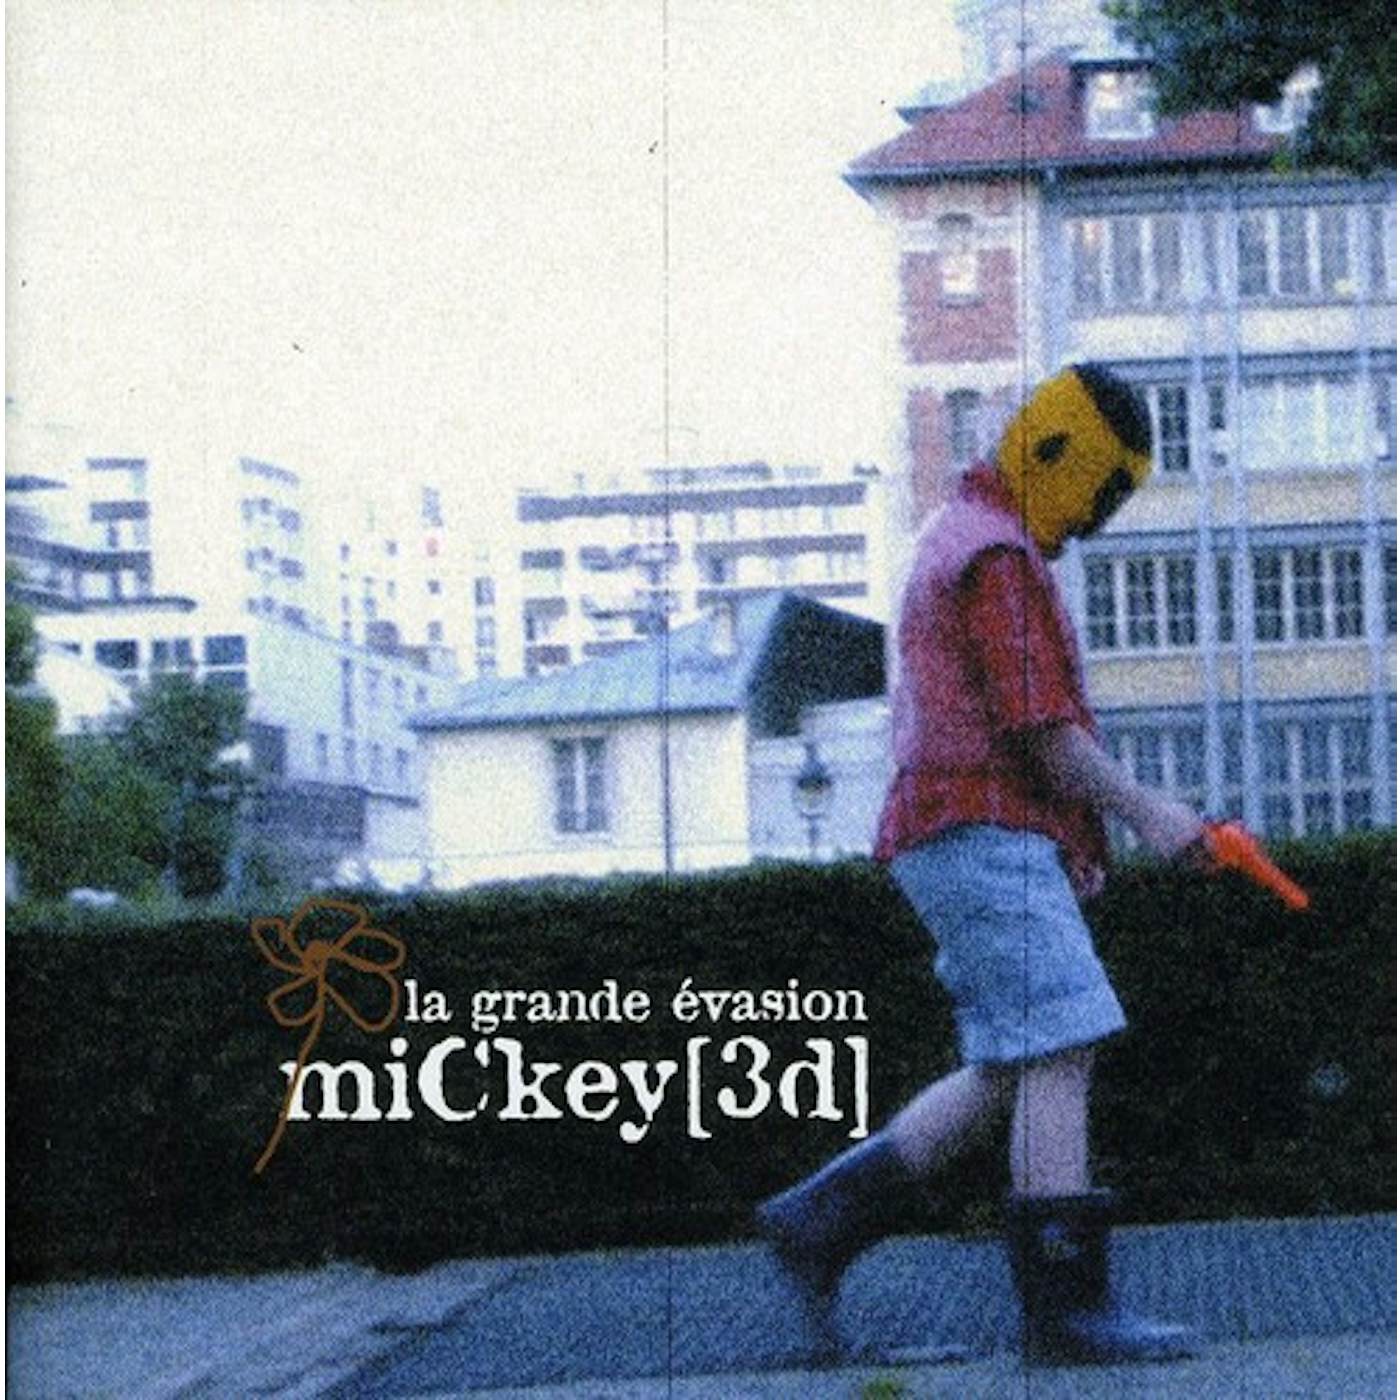 Mickey 3d LA GRANDE EVASION CD